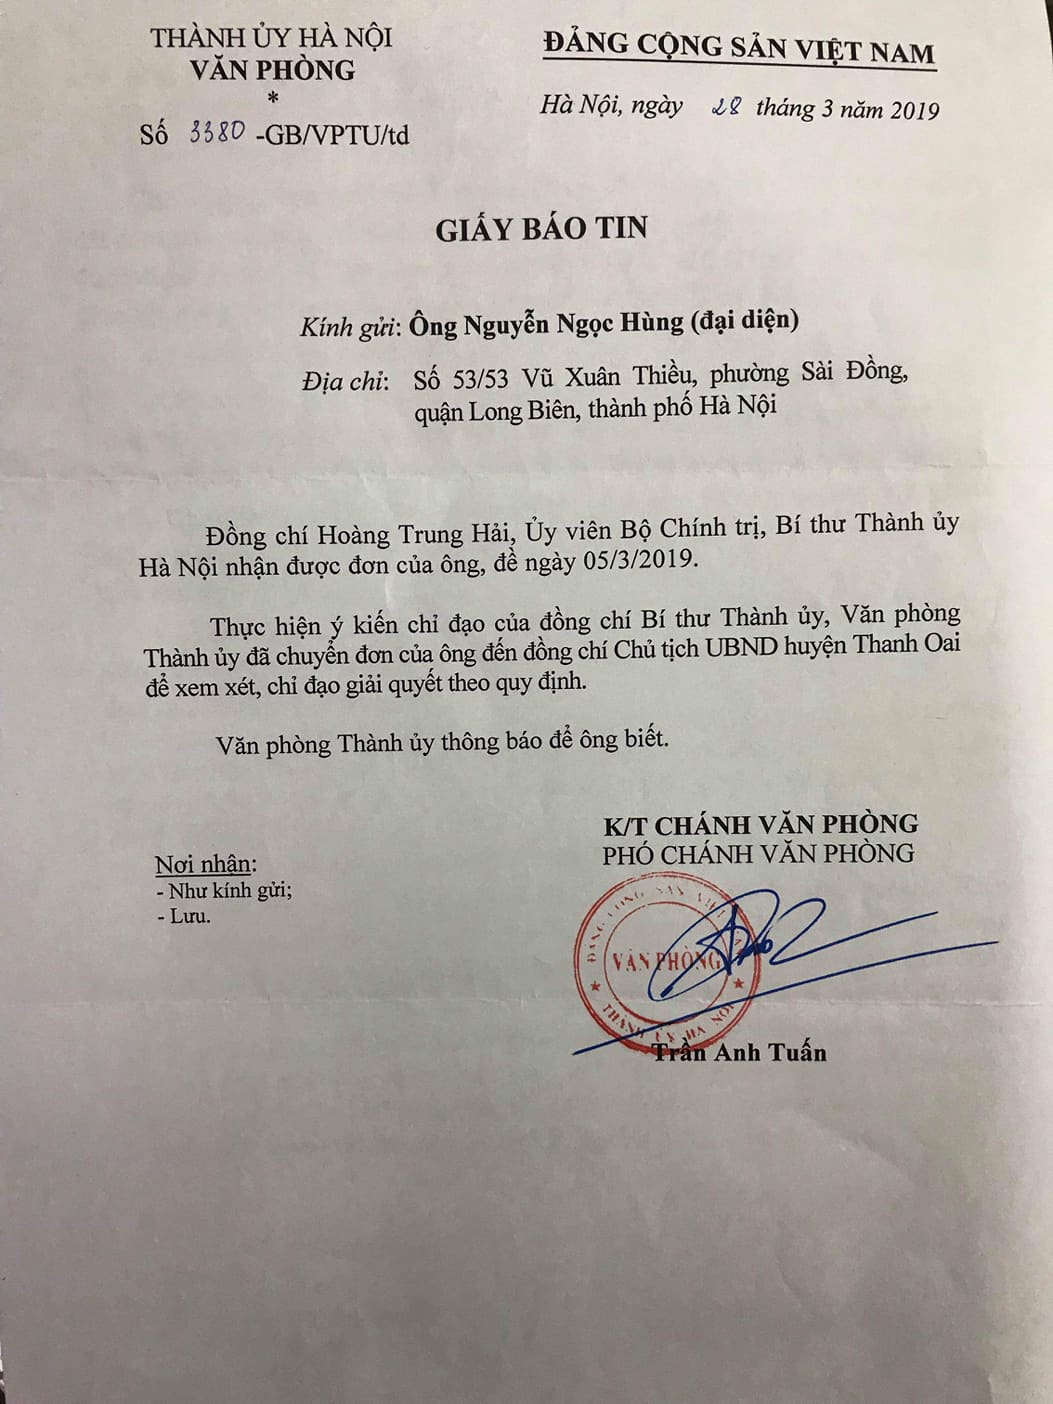 Giấy báo tin của Thành ủy Hà Nội theo chỉ đạo của đồng chí Hoàng Trung Hải, Ủy viên Bộ chính trị, Bí thư Thành ủy Hà Nội ngày 28/03/2019 về việc trả lời, giải quyết Đơn kiến nghị.